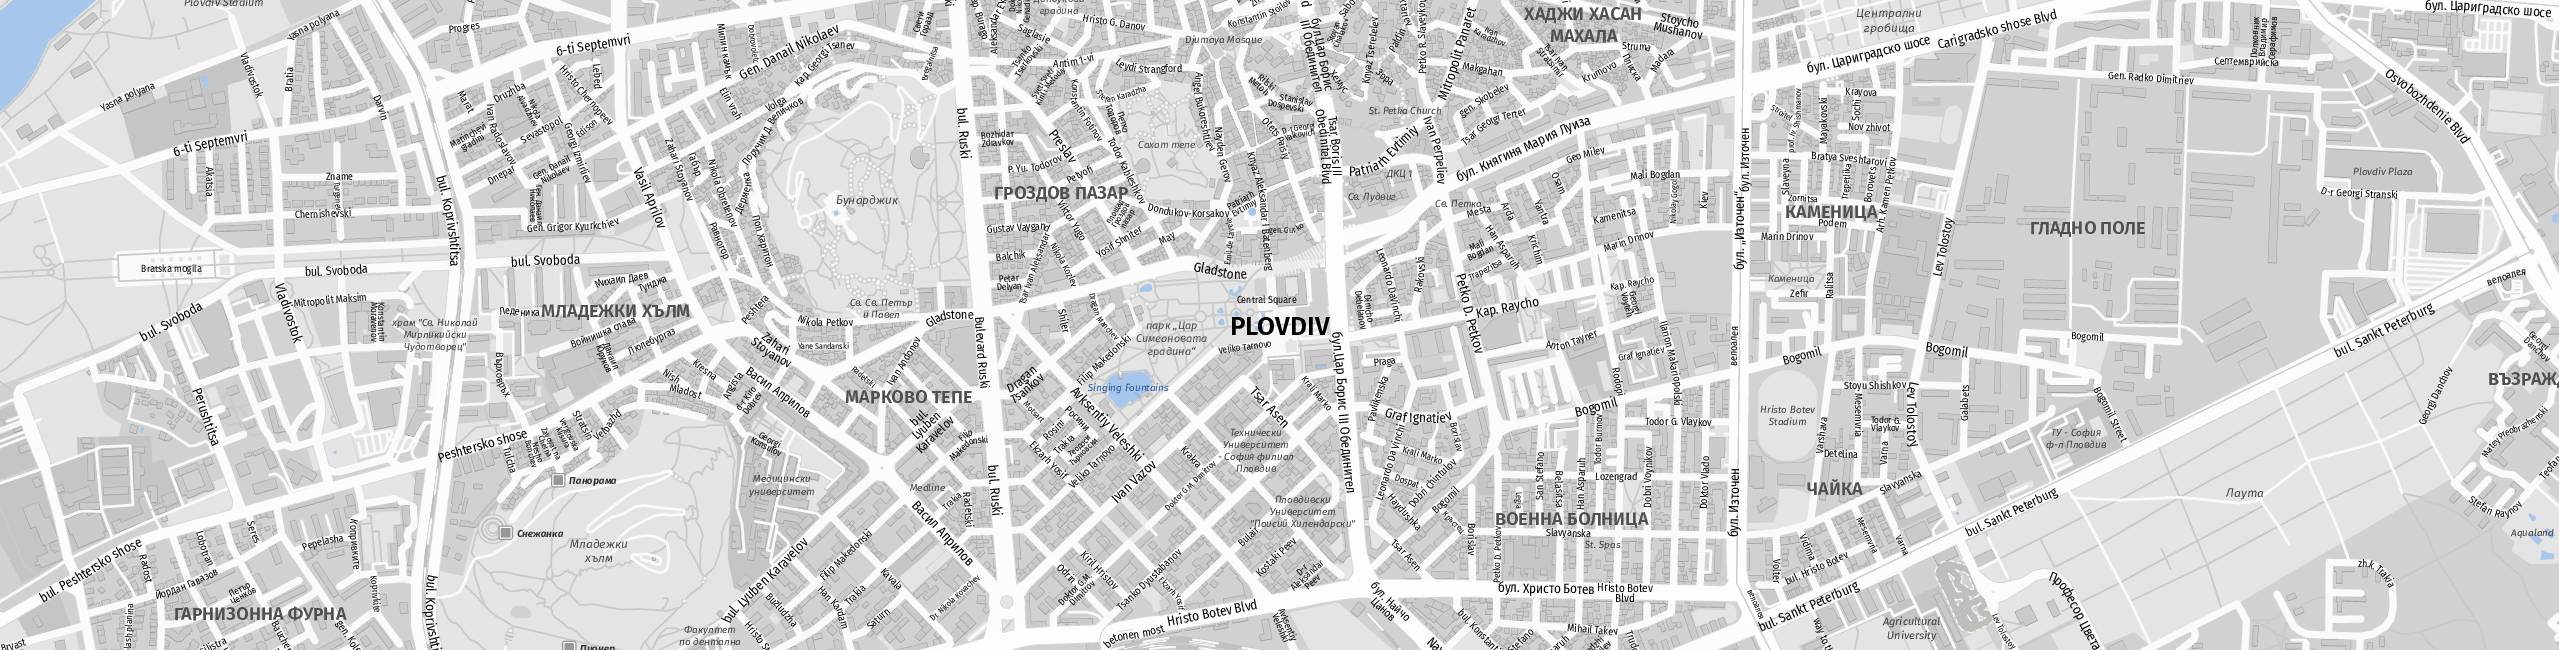 Stadtplan Plovdiv zum Downloaden.